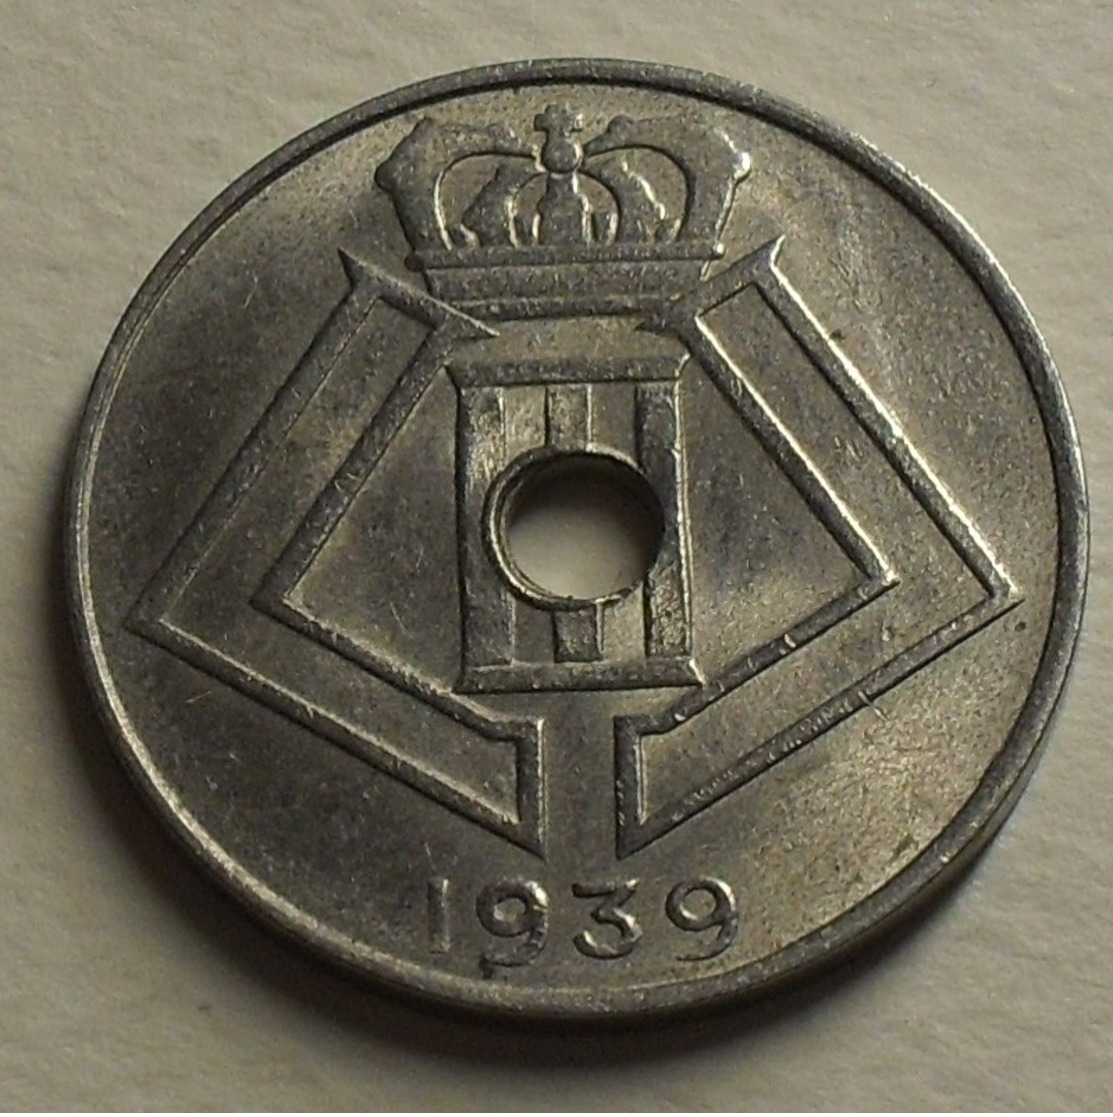 1939 - Belgique - Belgium - 10 CENTIMES,  LEOPOLD III, Légende Belgie-Belgique, KM 113.1 - 10 Centimes